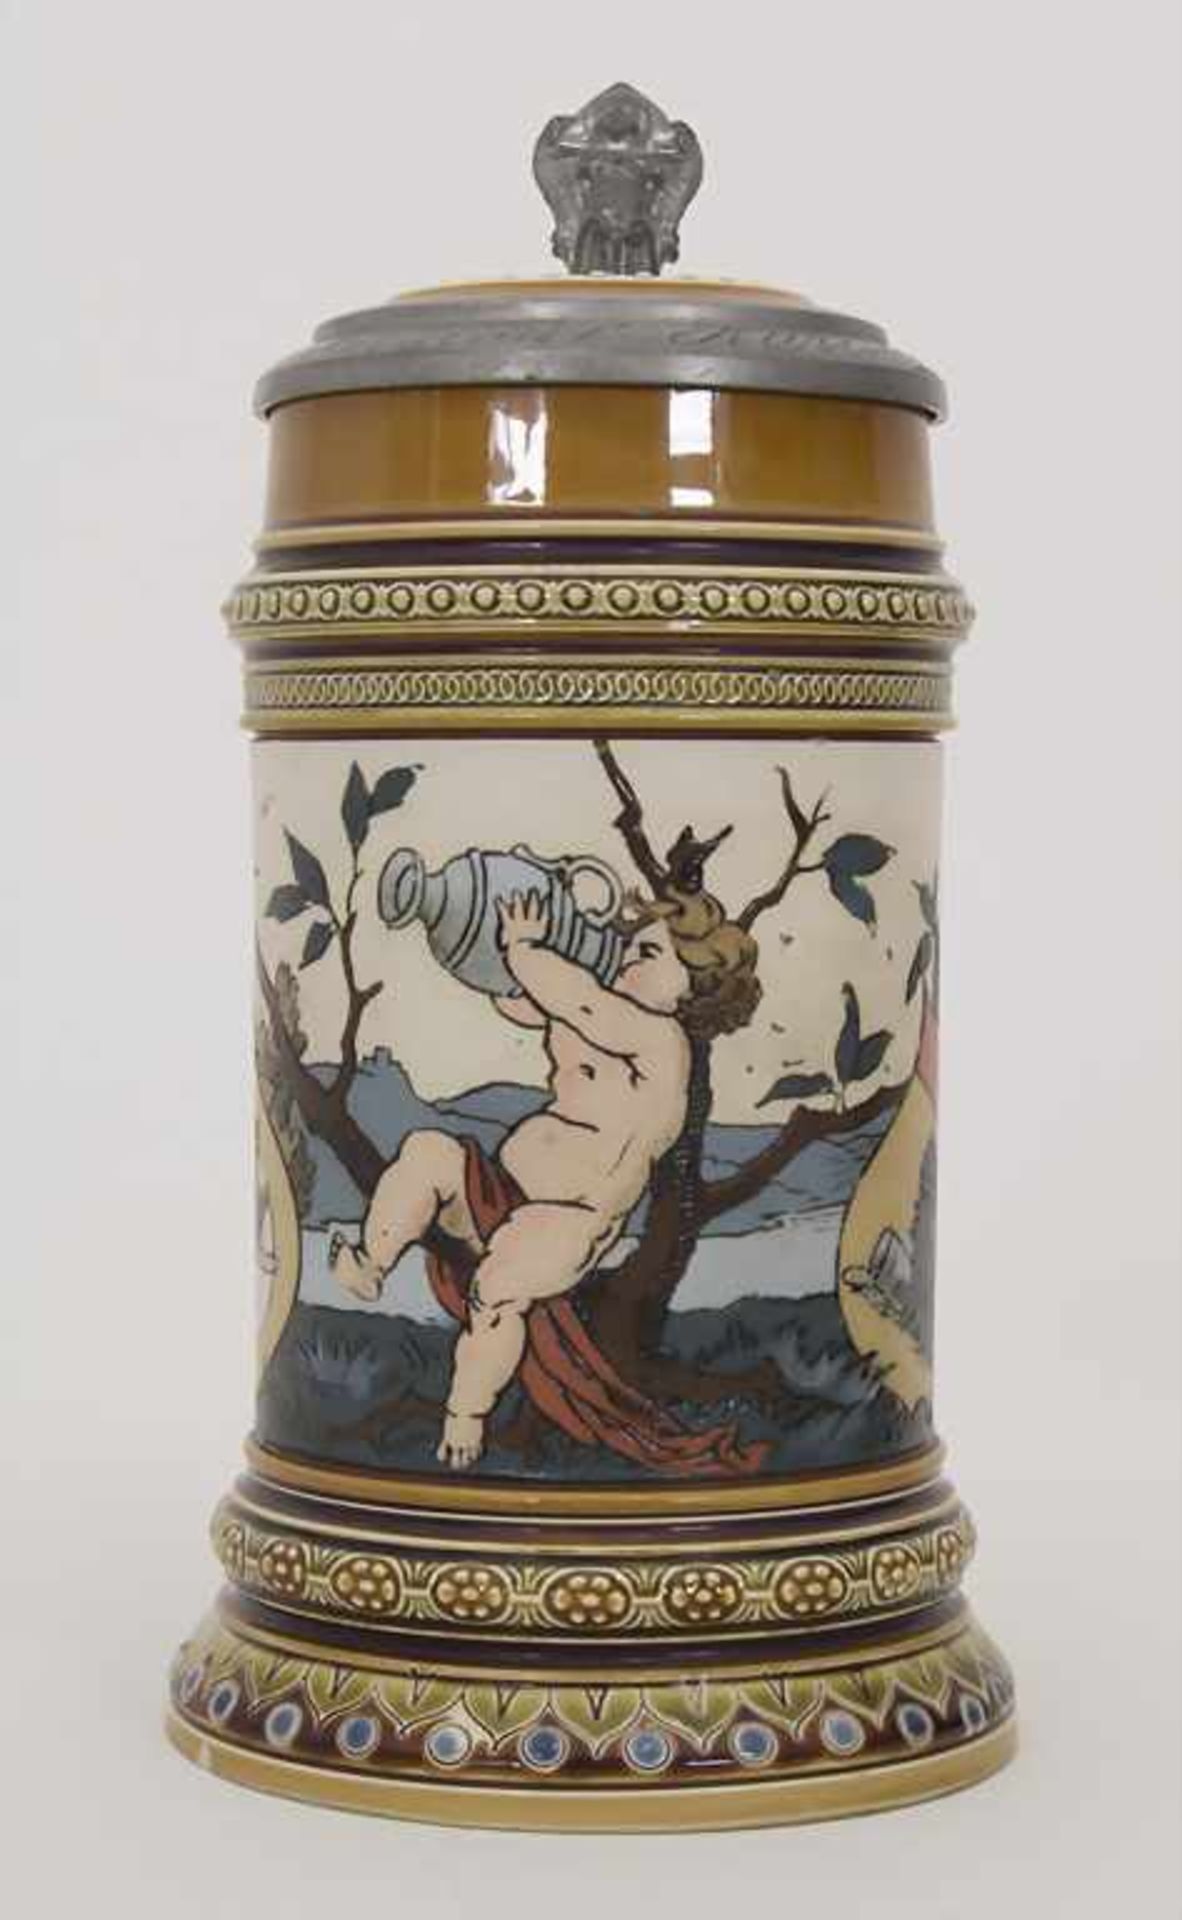 Bierkrug 0,5 L / A stoneware beer mug, Mettlach, Entwurf Christian Warth, um 1894